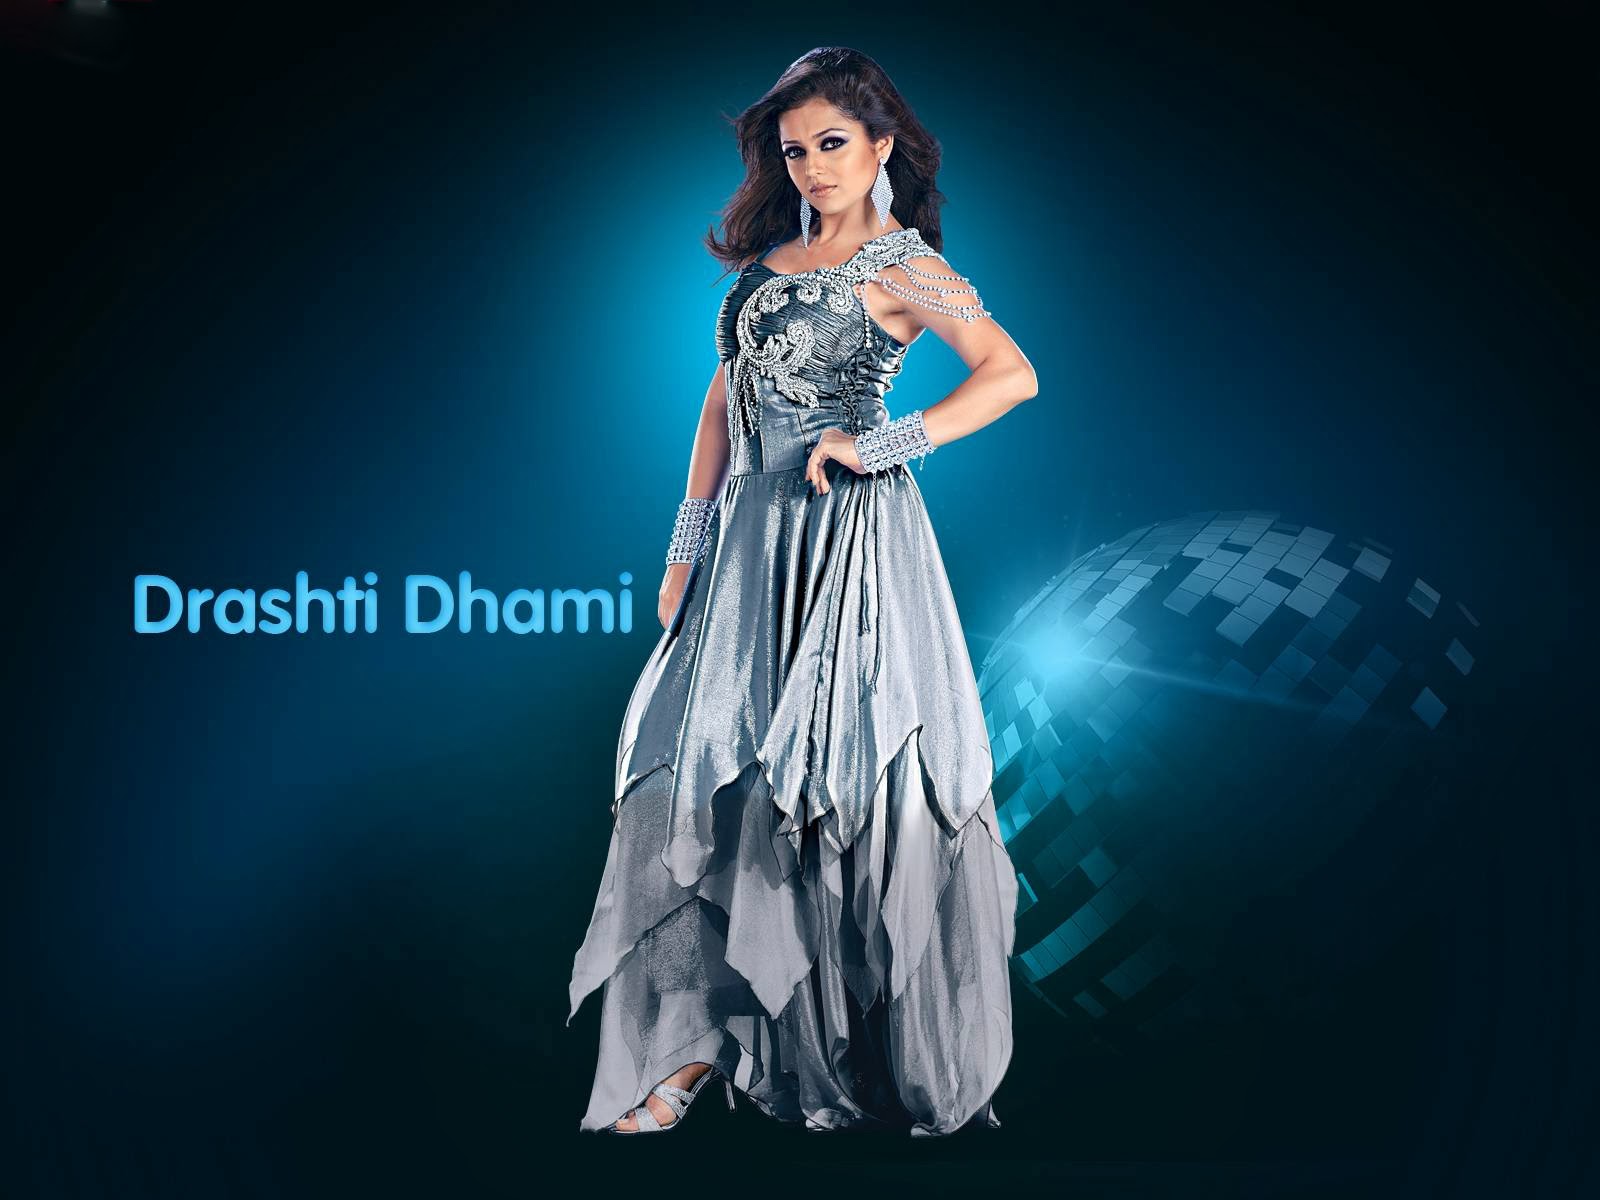 Drashti Dhami Awesome Blue Dress - Drashti Dhami , HD Wallpaper & Backgrounds